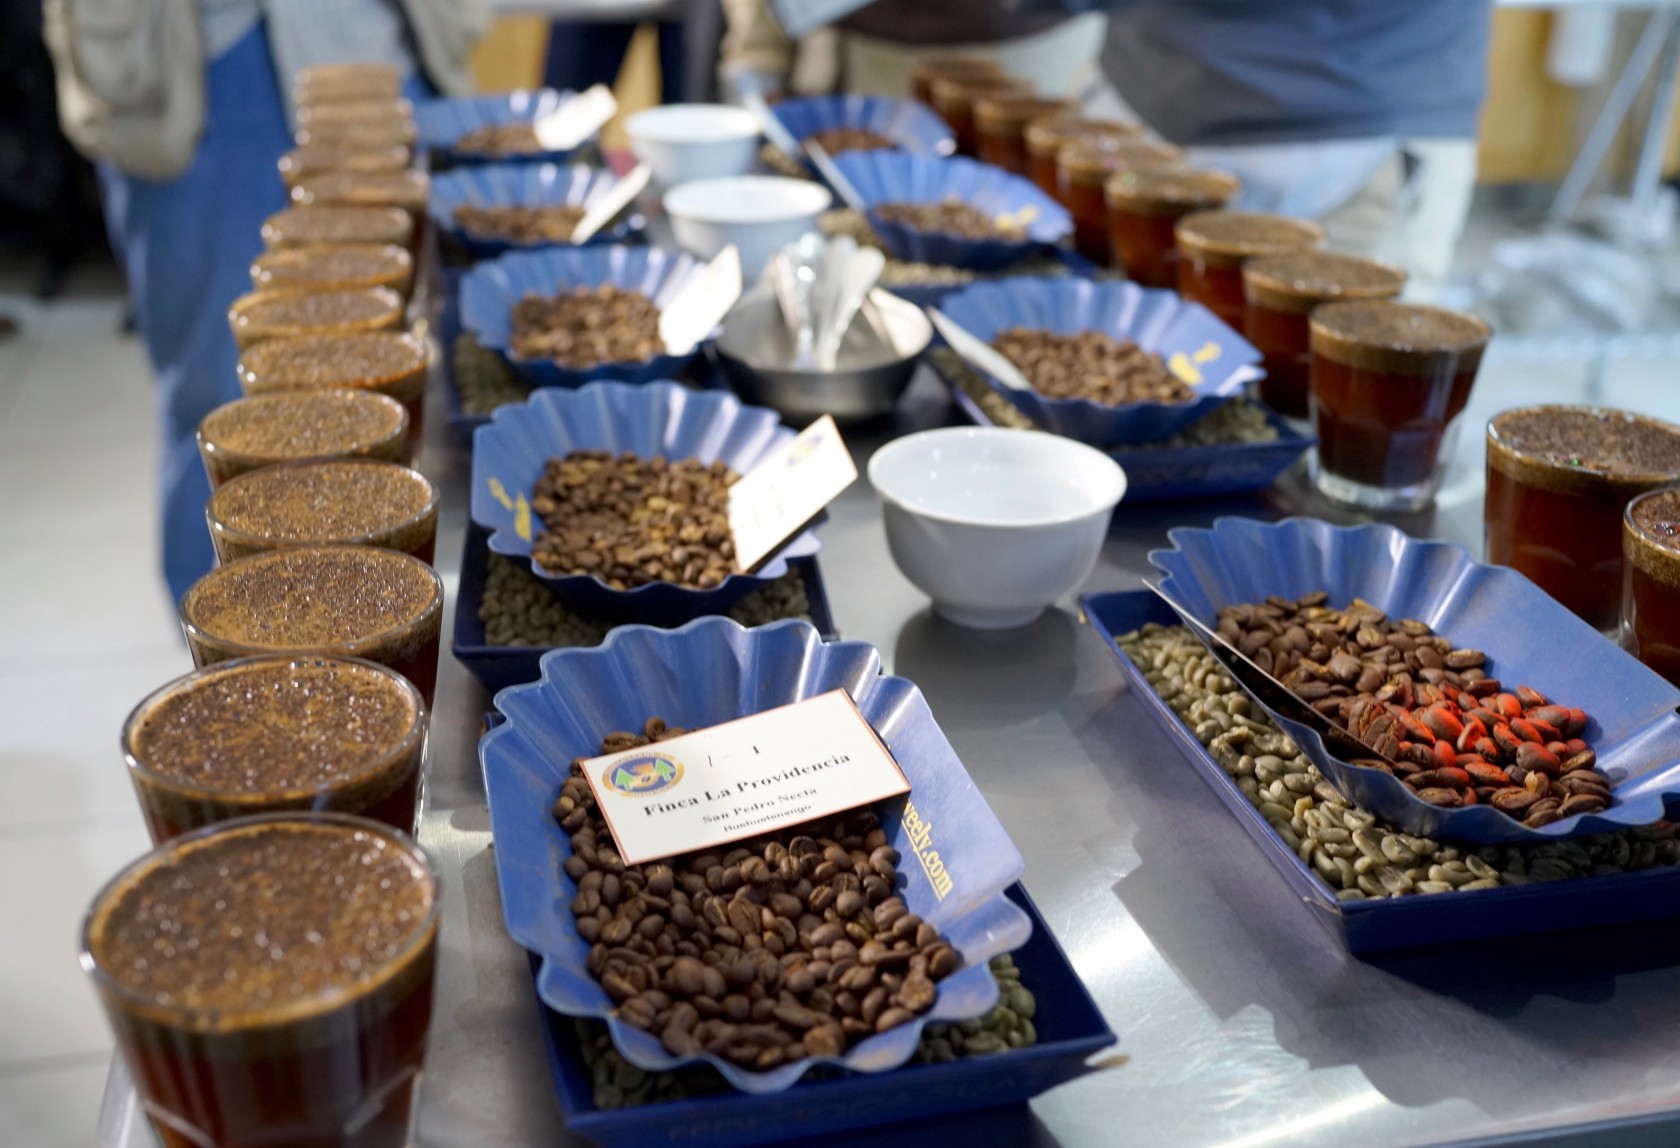 スペシャルティコーヒー素材買付の旅2016  グアテマラ